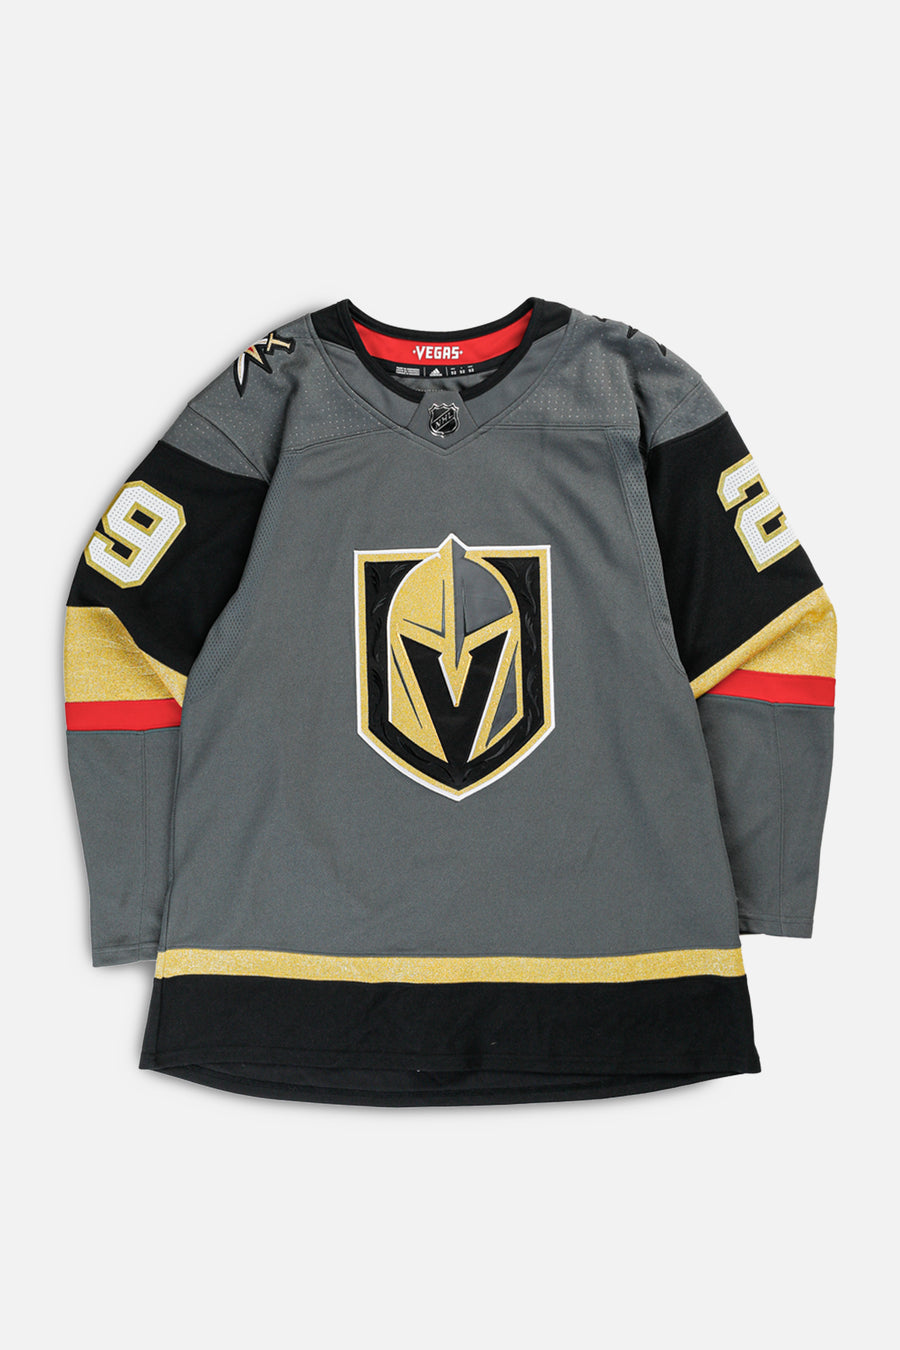 Vintage Vegas Golden Knights NHL Jersey - M